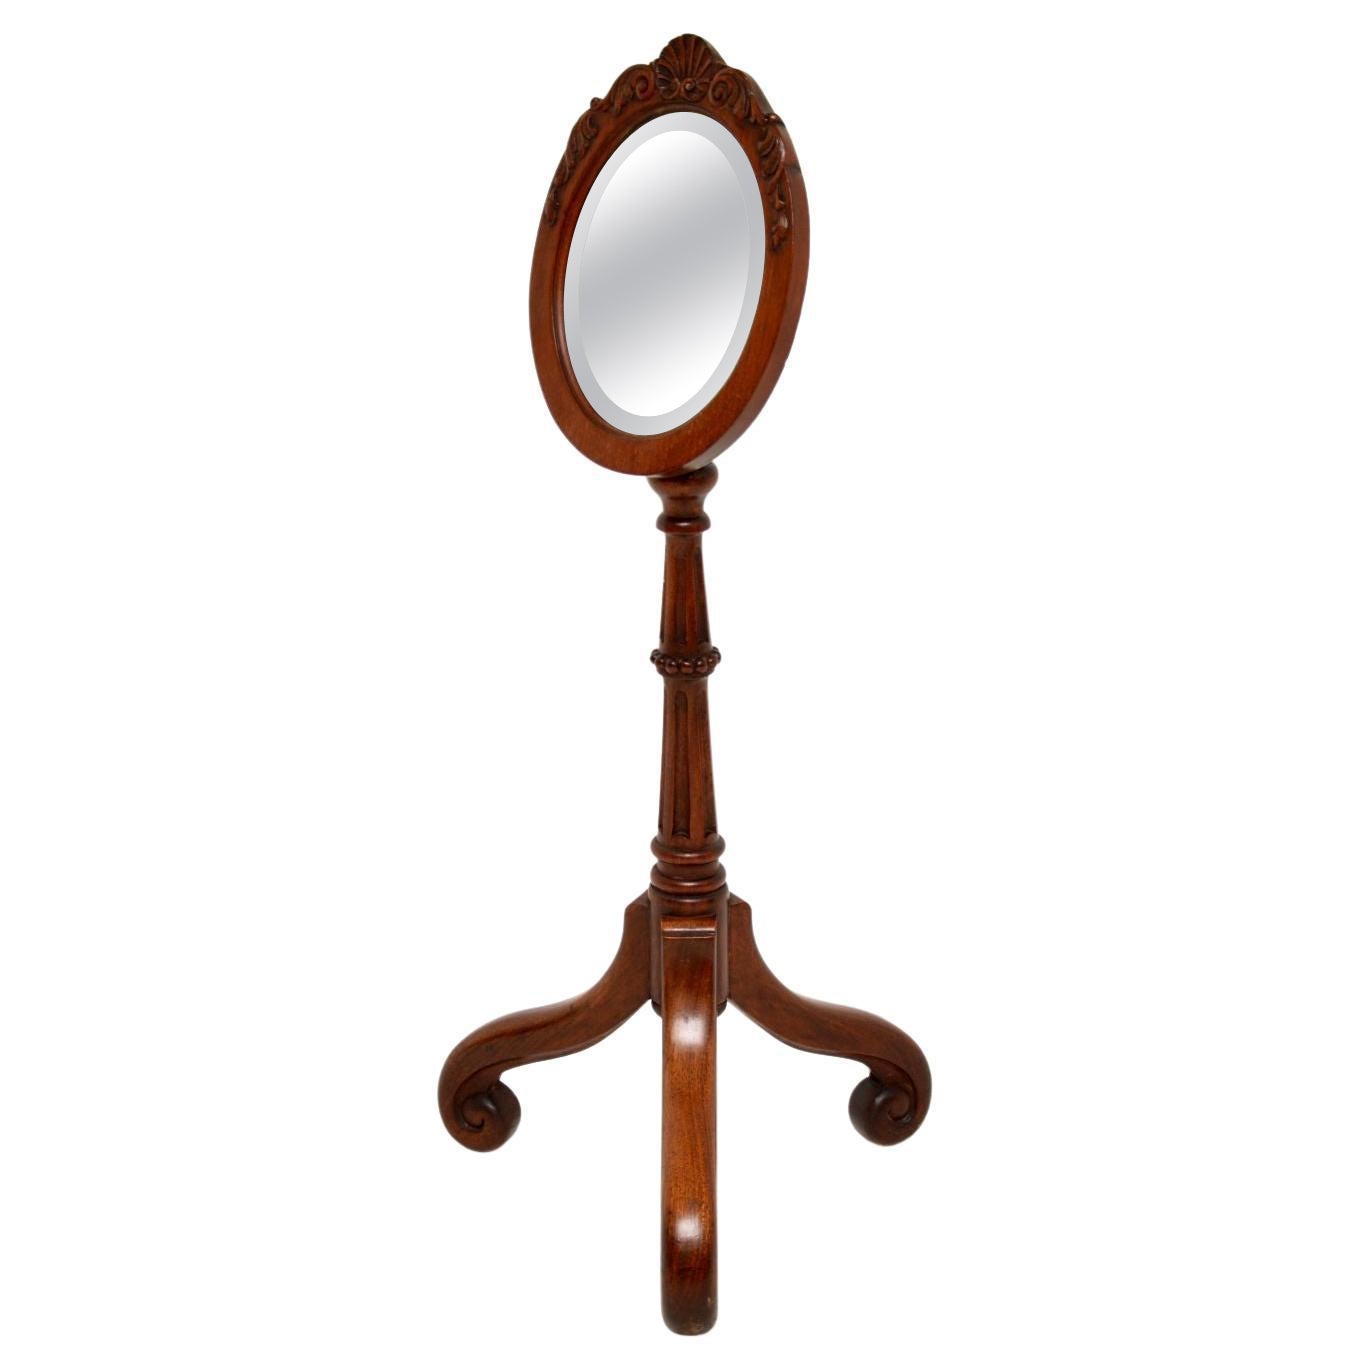 Ein schöner und recht charmanter antiker viktorianischer Rasierspiegel. Sie wurde in England hergestellt und stammt aus der Zeit zwischen 1860 und 1880.

Sie ist von hervorragender Qualität und wunderschön geschnitzt. Der ovale Spiegel steht auf